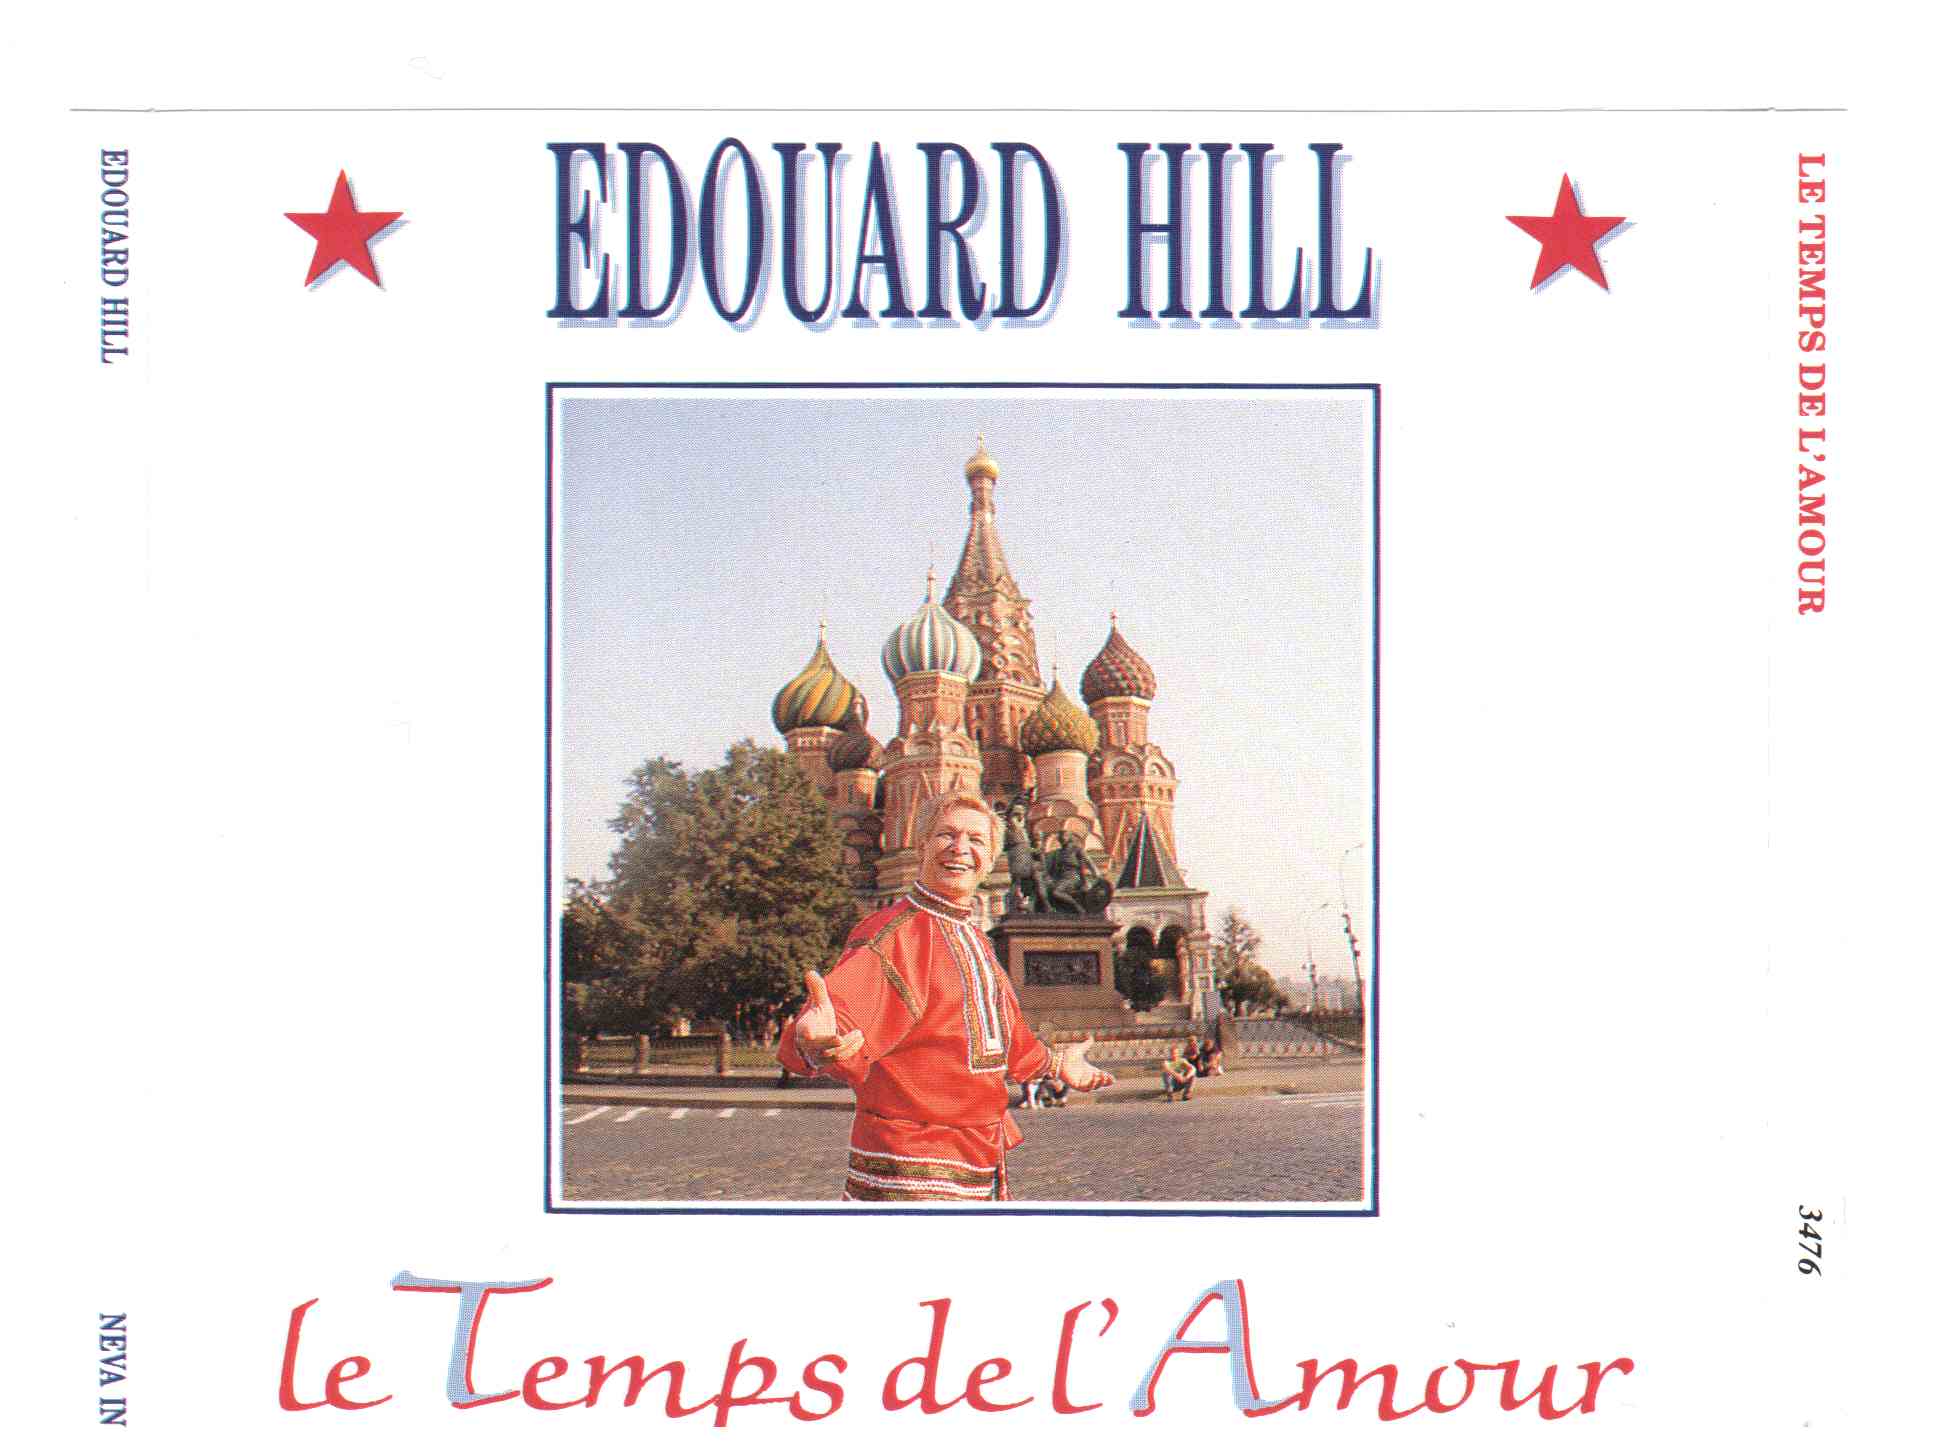 Le temps de l amour. Компакт диск Москва златоглавая 2003 год. Москва златоглавая текст.